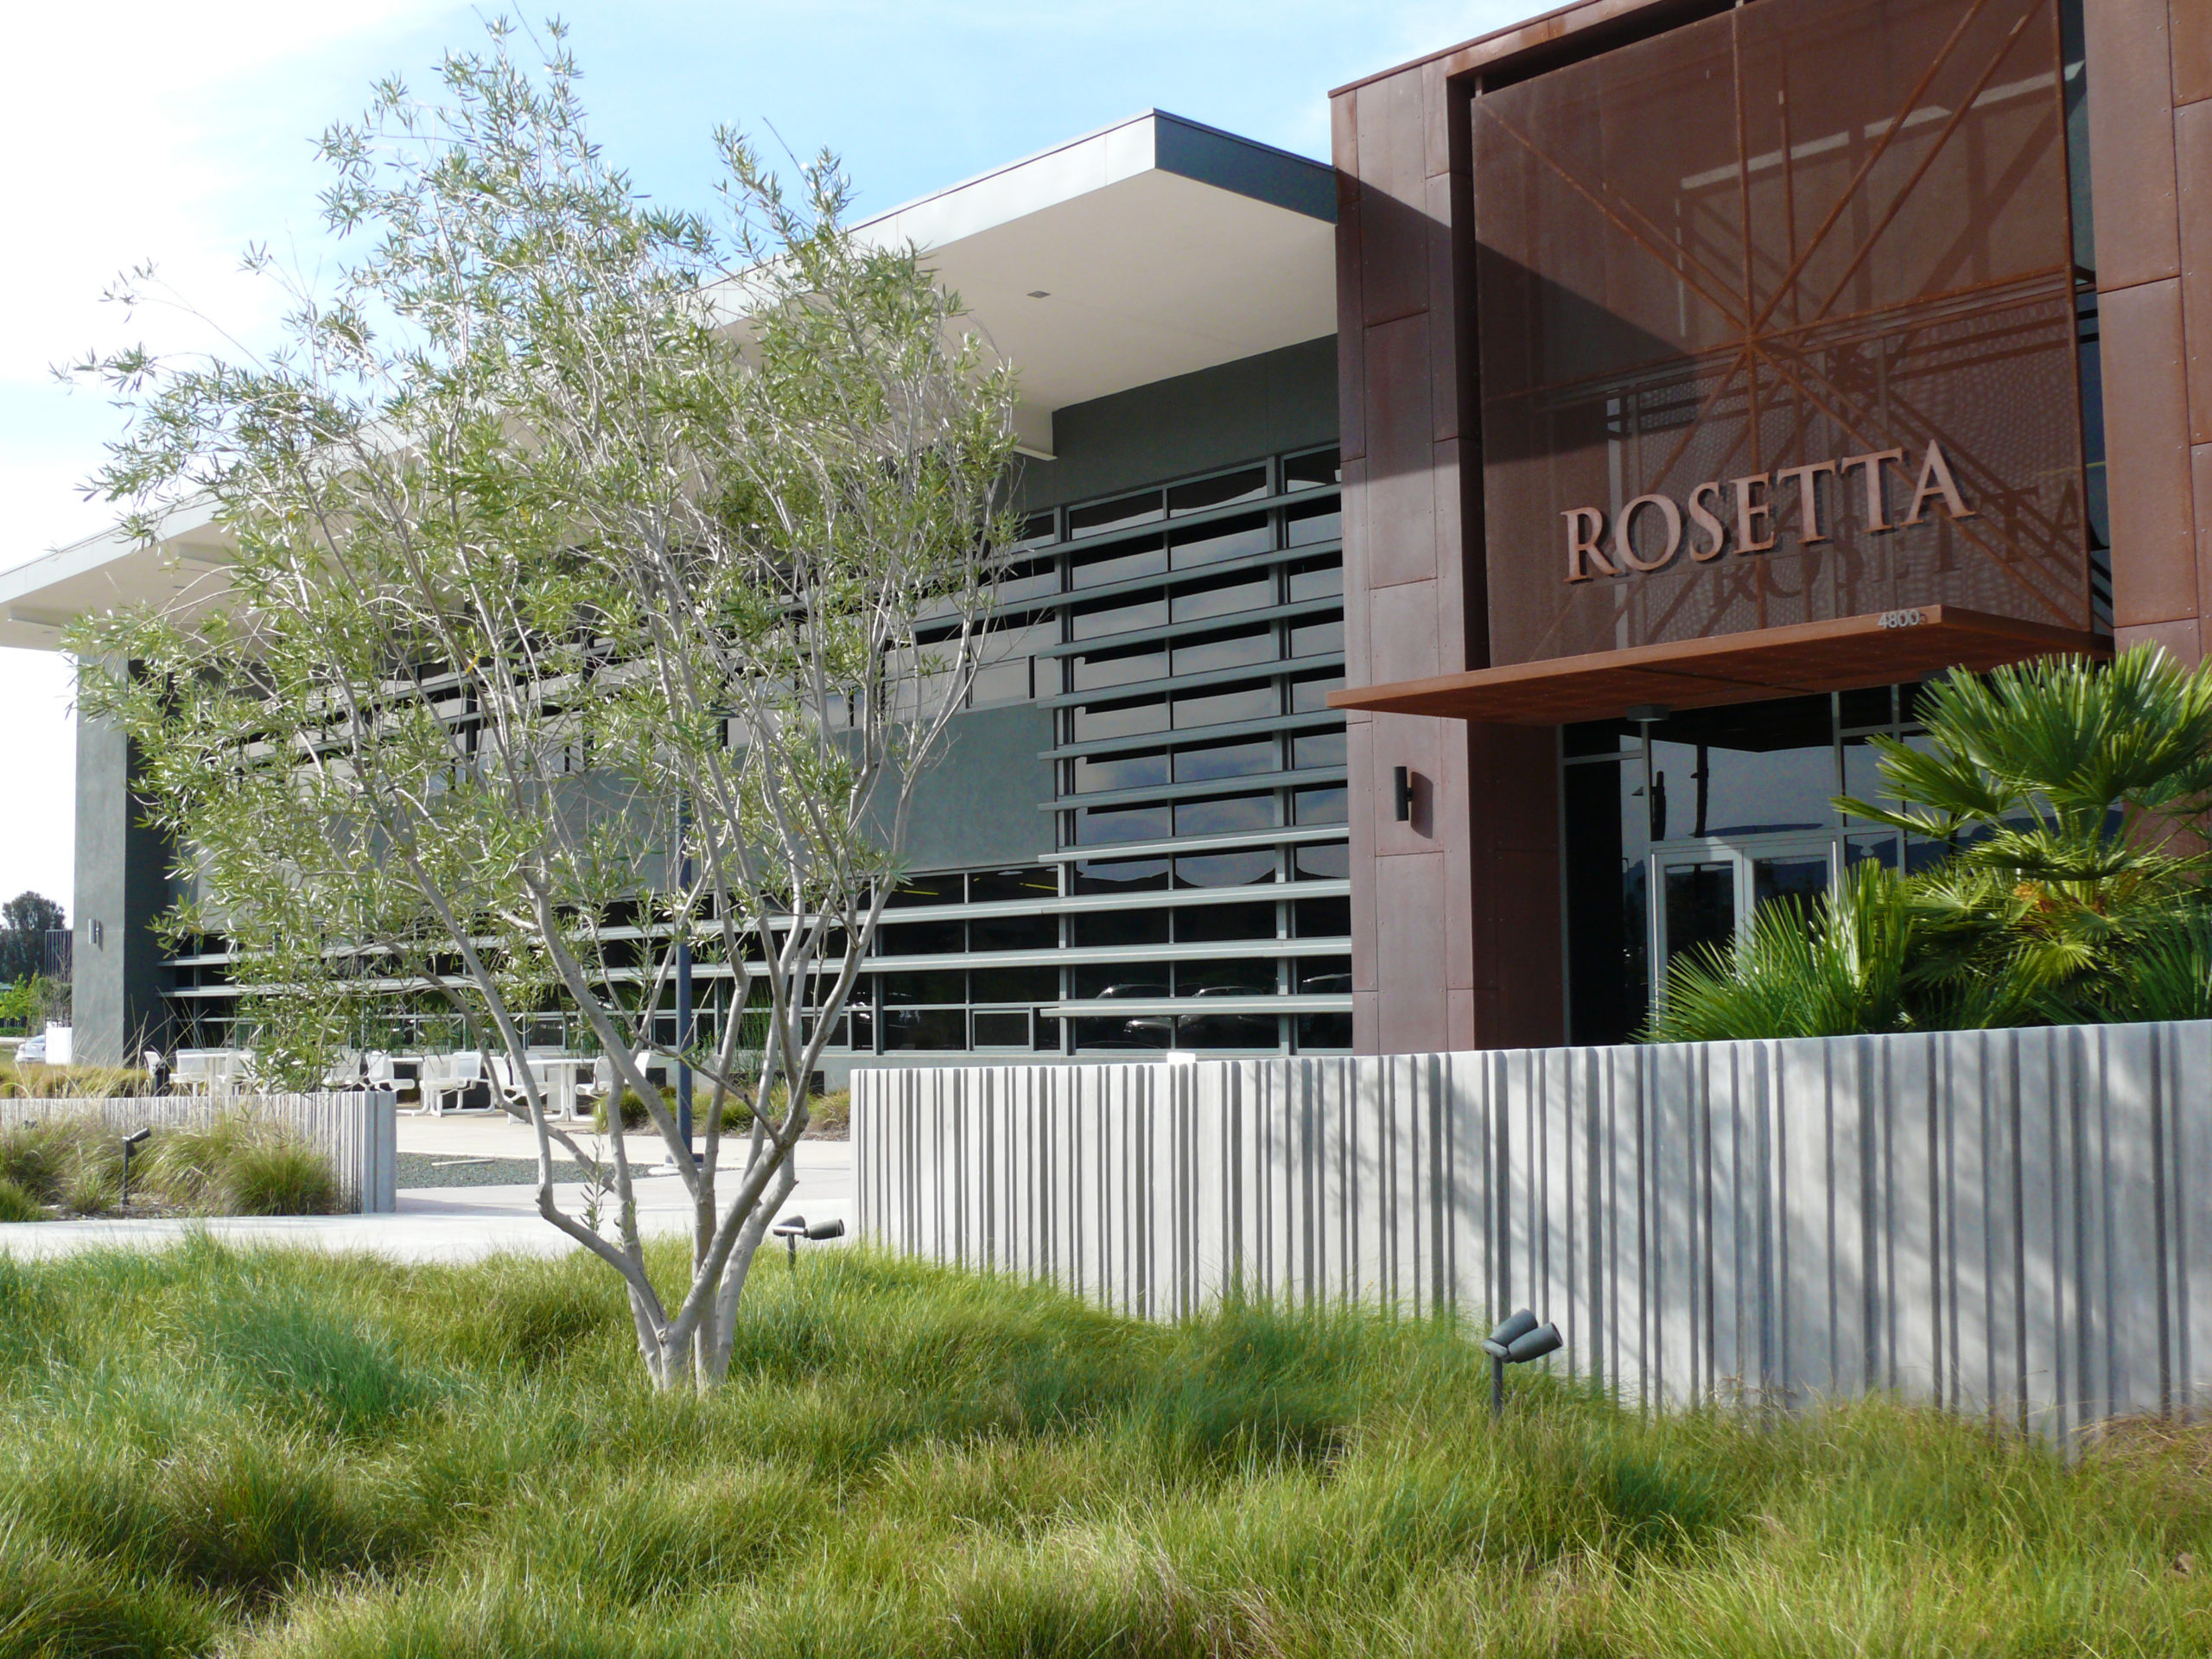 Rosetta- Oasis Associates Inc - Landscape Architecture